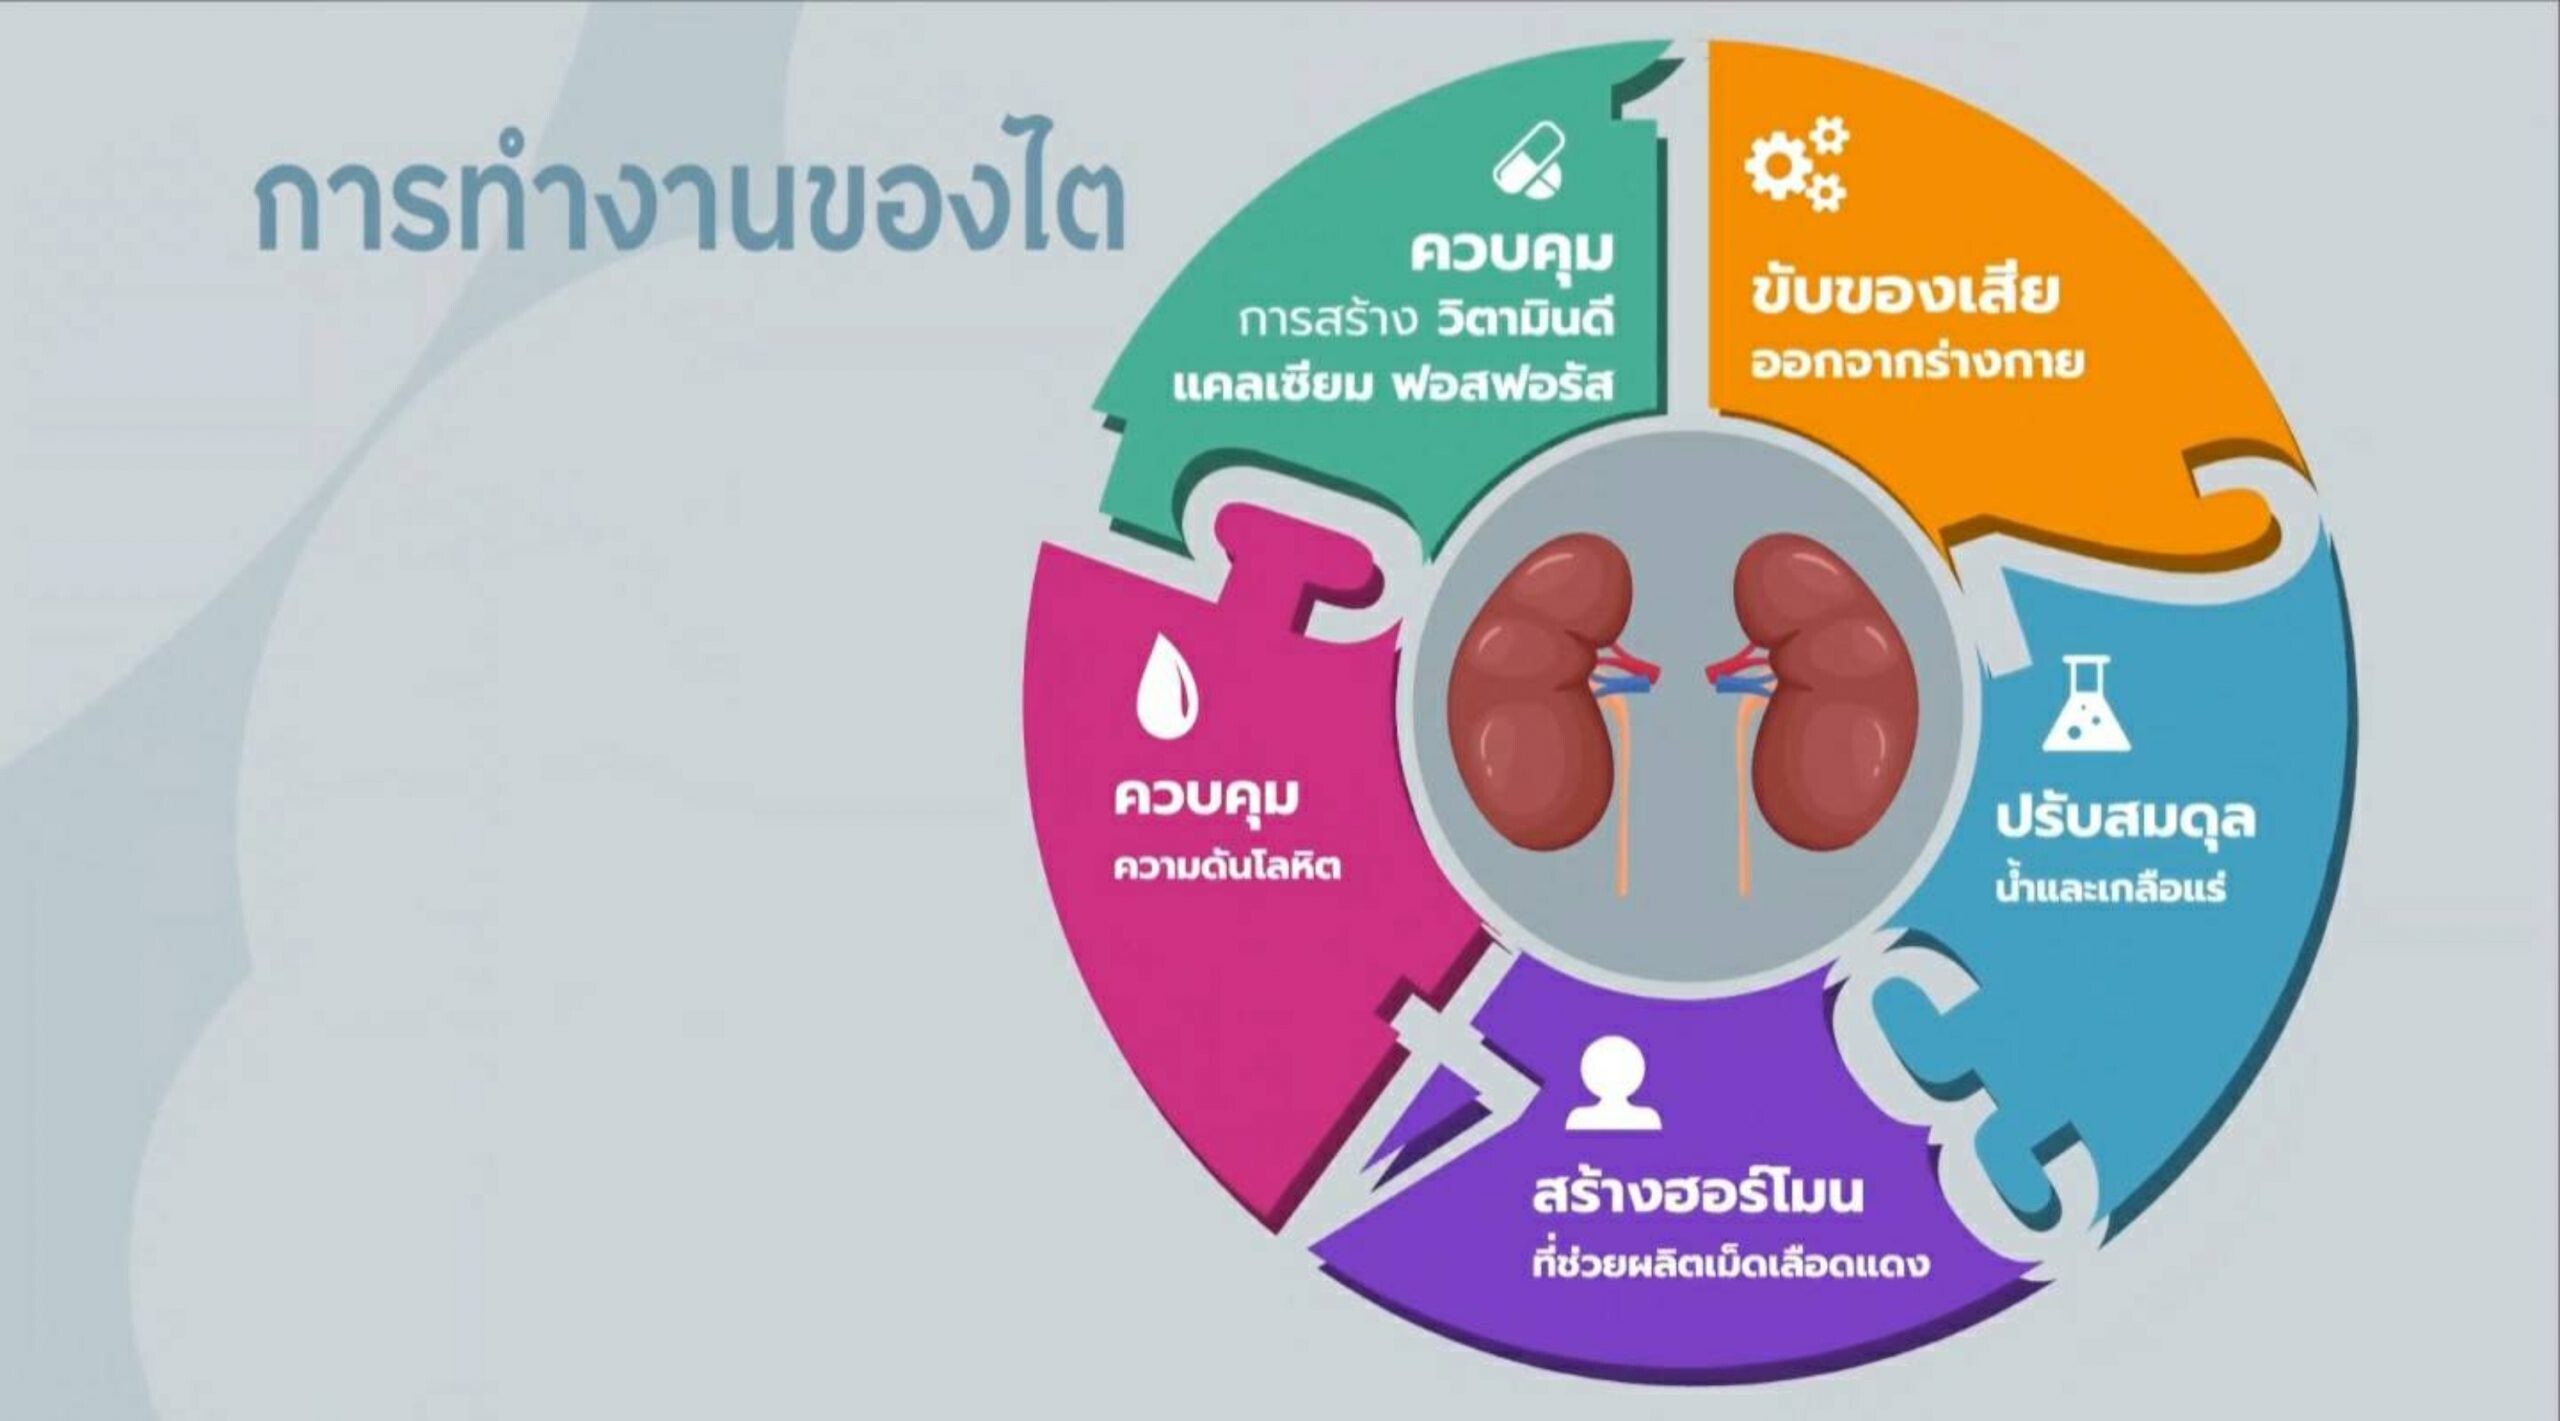 สมาคมเพื่อนโรคไตแห่งประเทศไทย ชวนชมเรื่องจริงจากผู้ป่วย "โรคไตเรื้อรัง .. รู้ไว้ รักษาเร็ว"